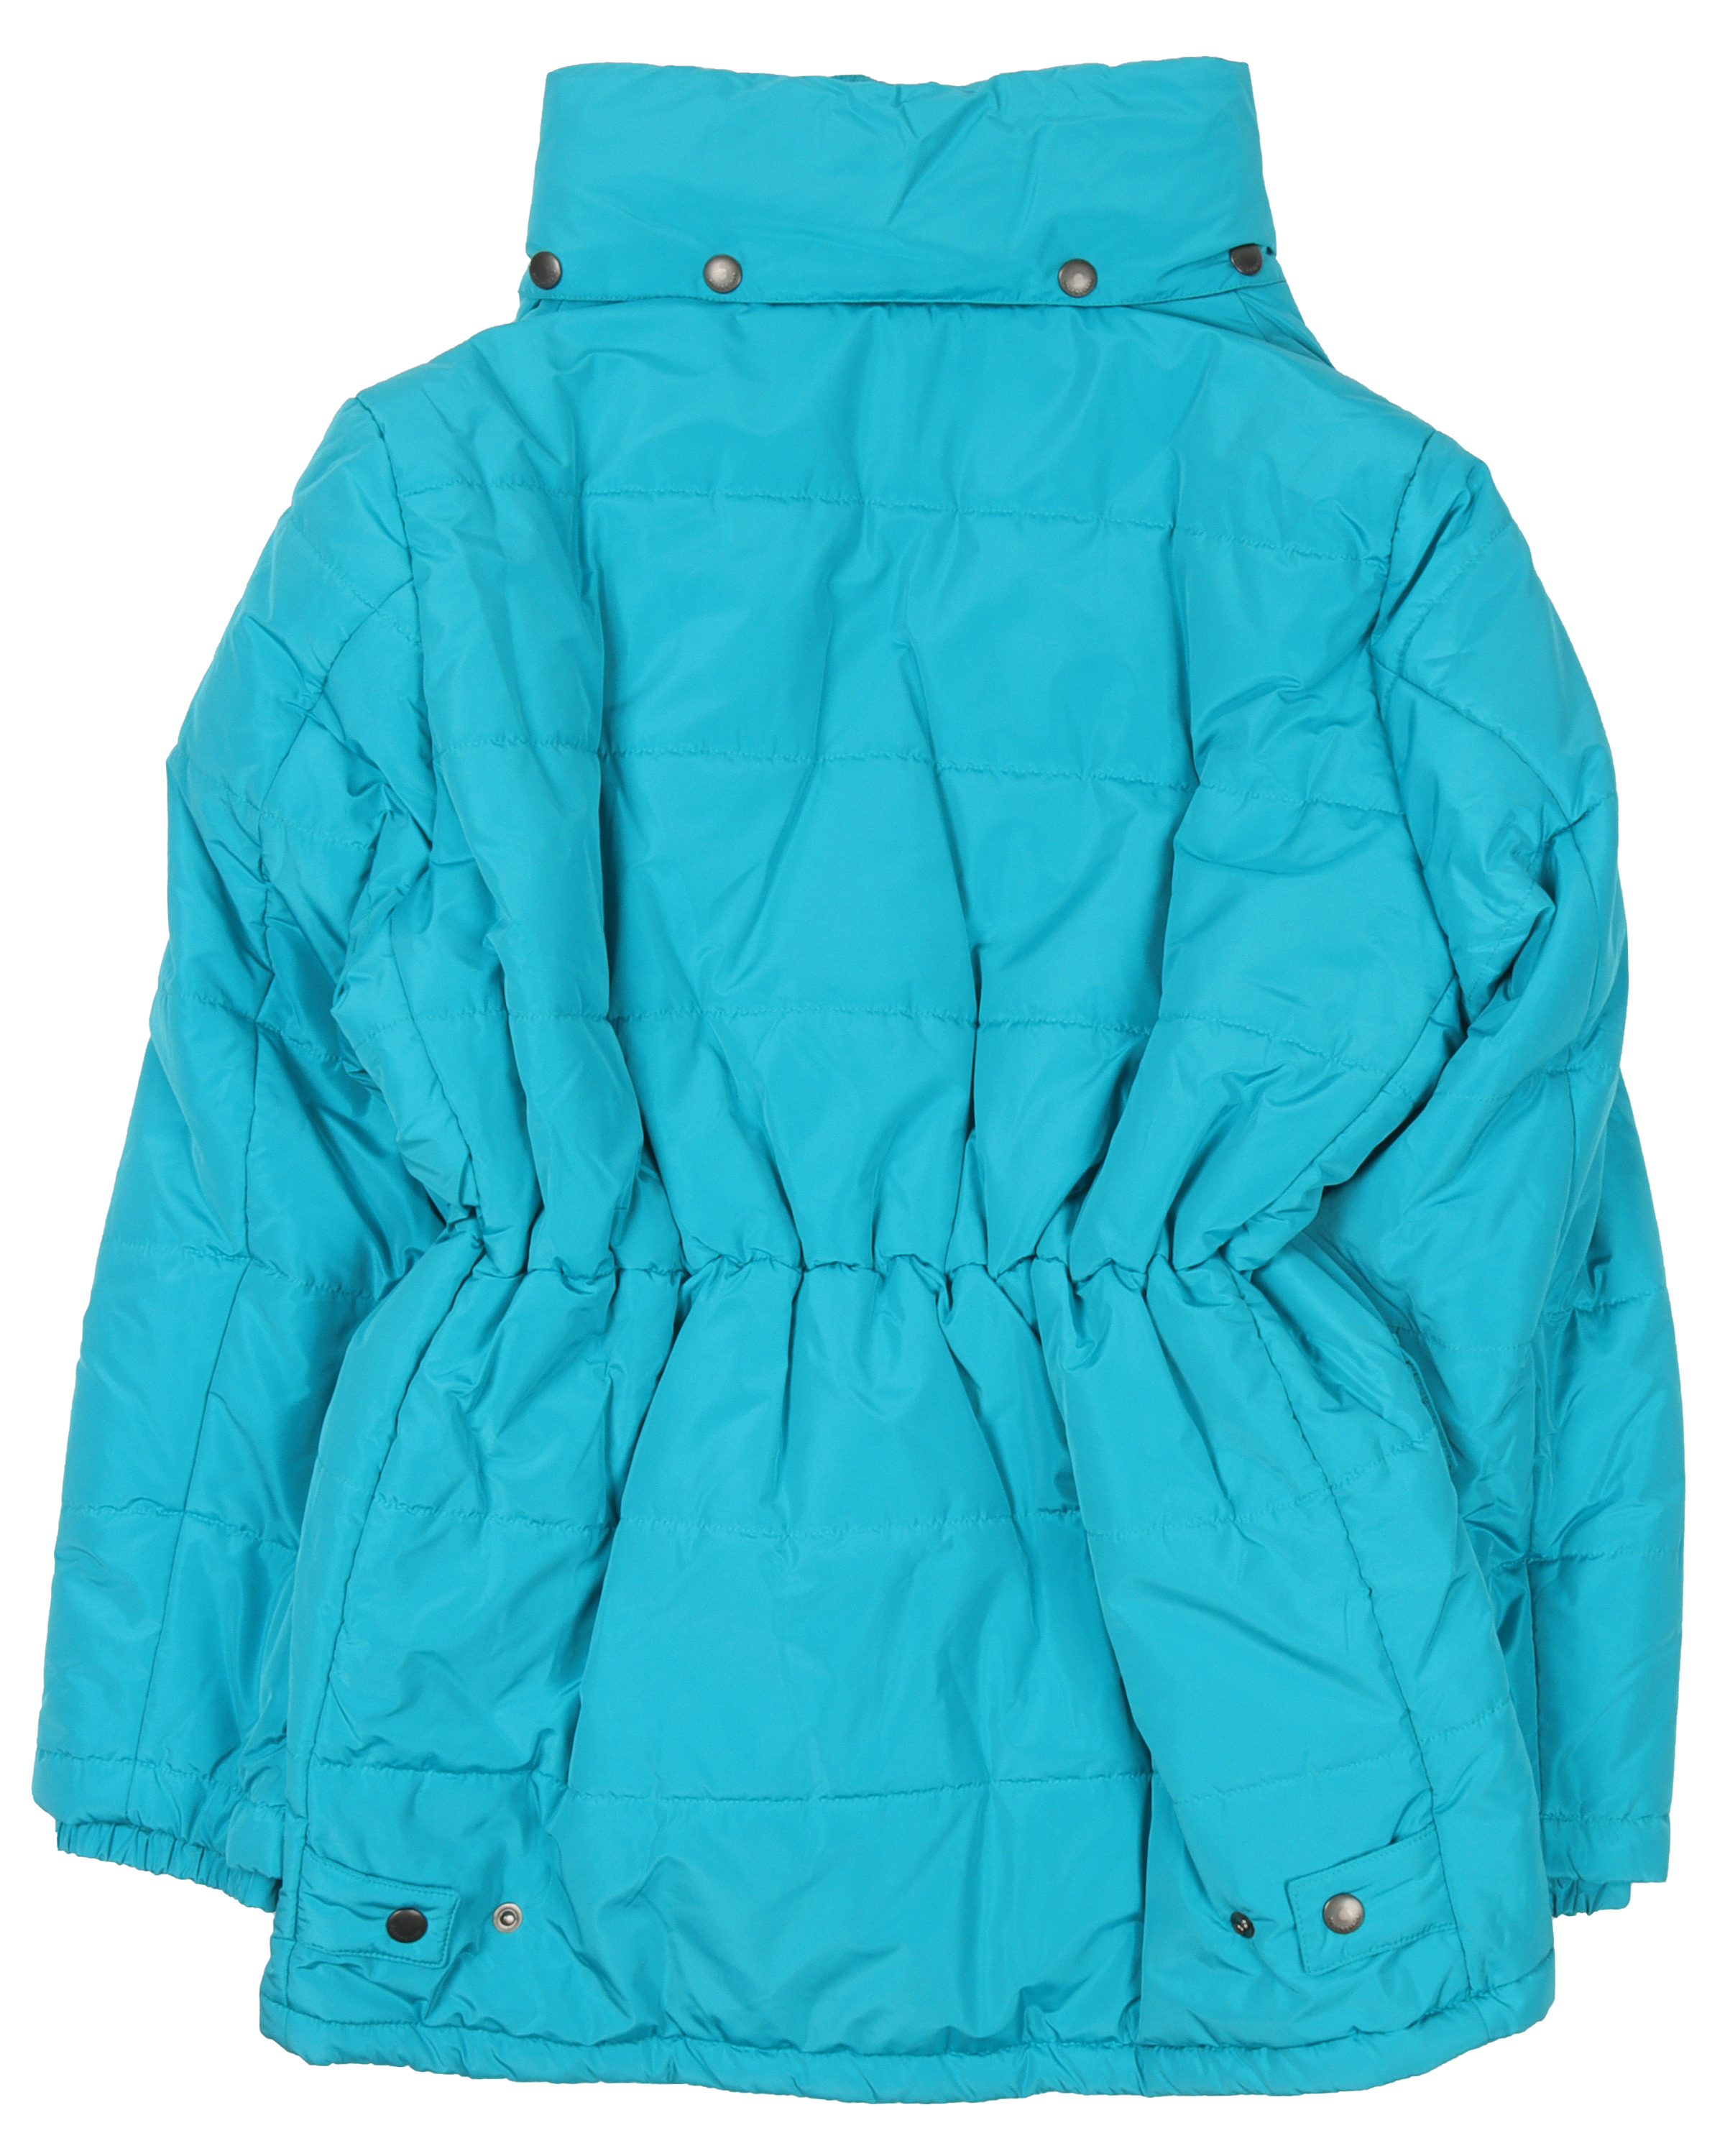 Windproof Jacket Balenciaga Clothing Turquoise